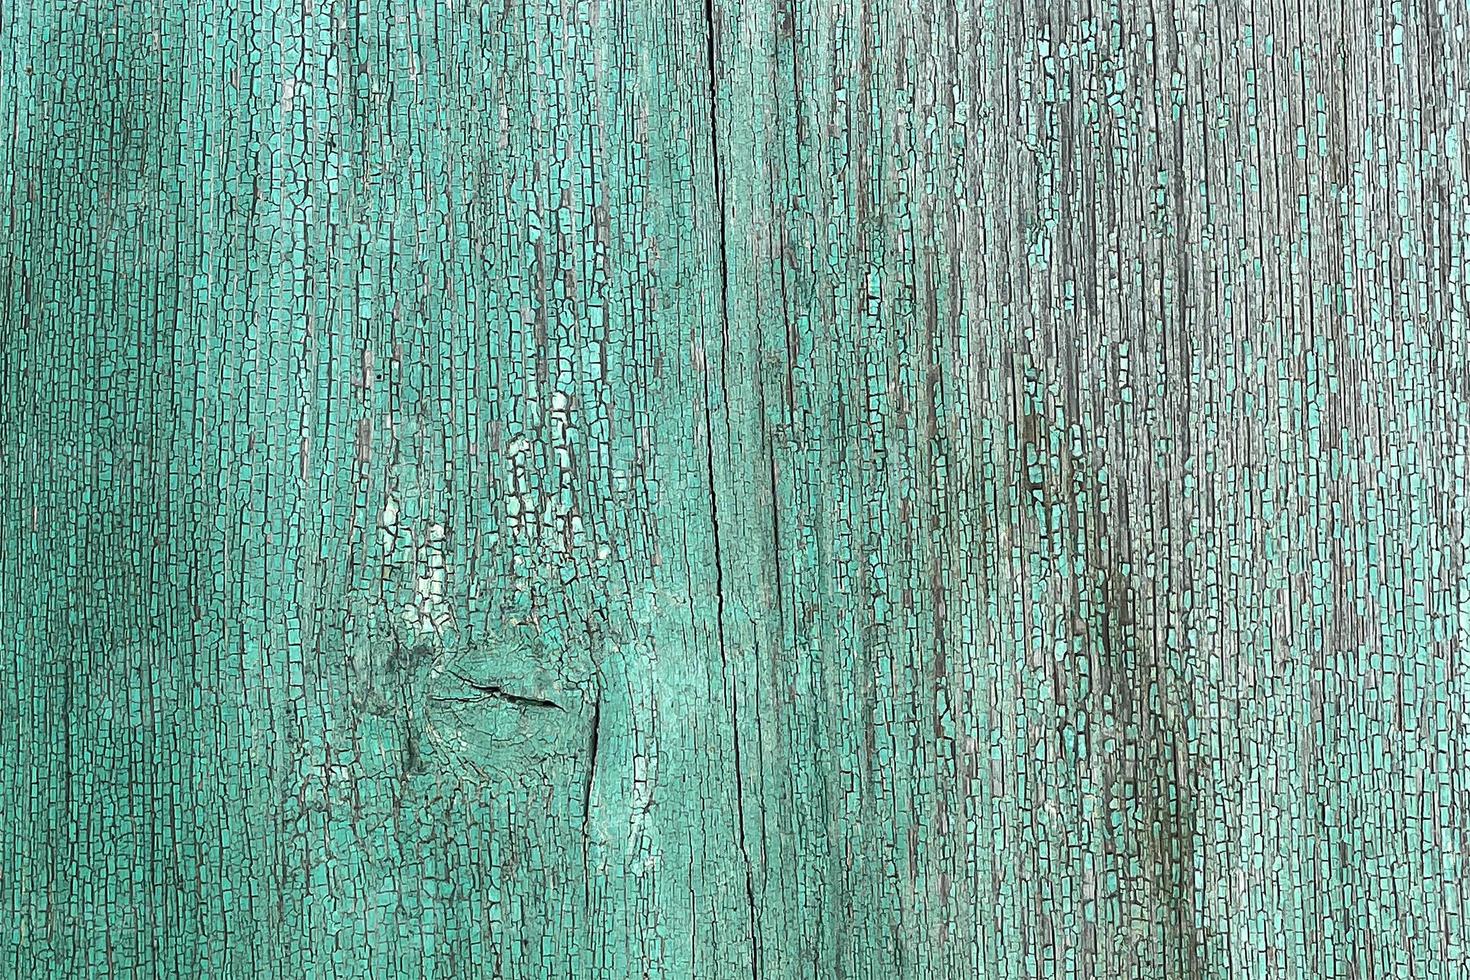 vägg av träplankor i blå färg med sprickor. bakgrund för design foto